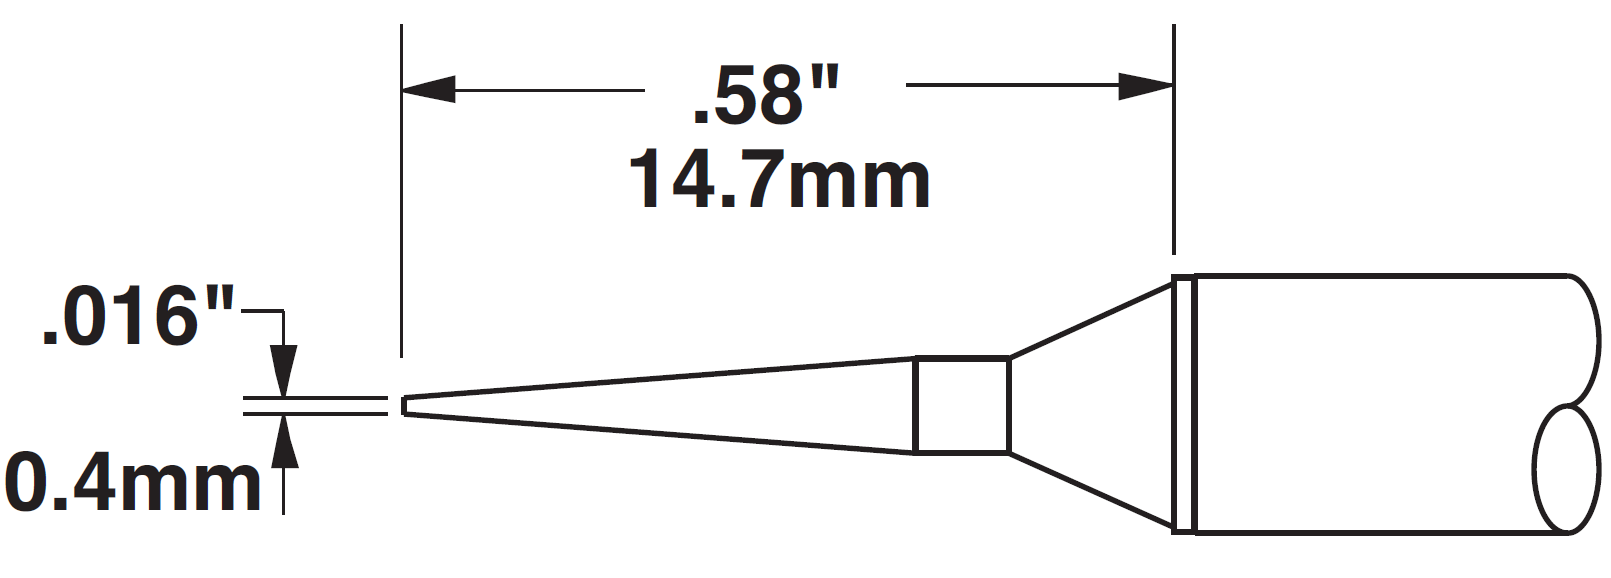 Картридж-наконечник для СV/MX, конус удлиненный, 0.4х14.7мм (замена STTC-045)